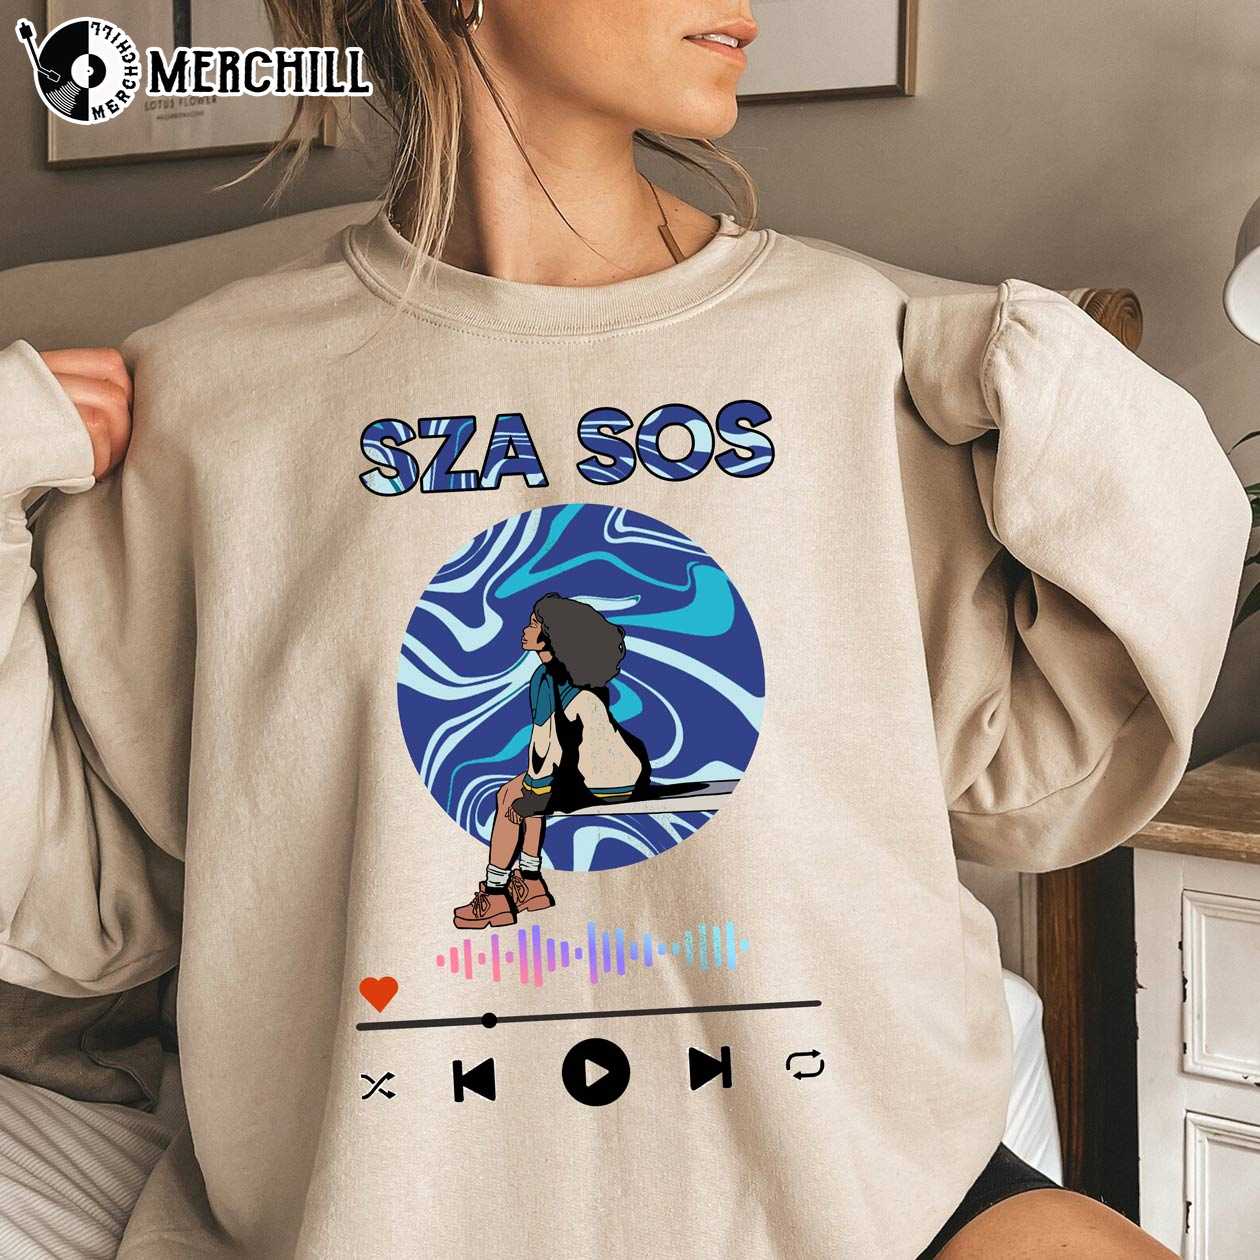 Sza Merch, Sza Sos Merch, Sza Fans Merchandise